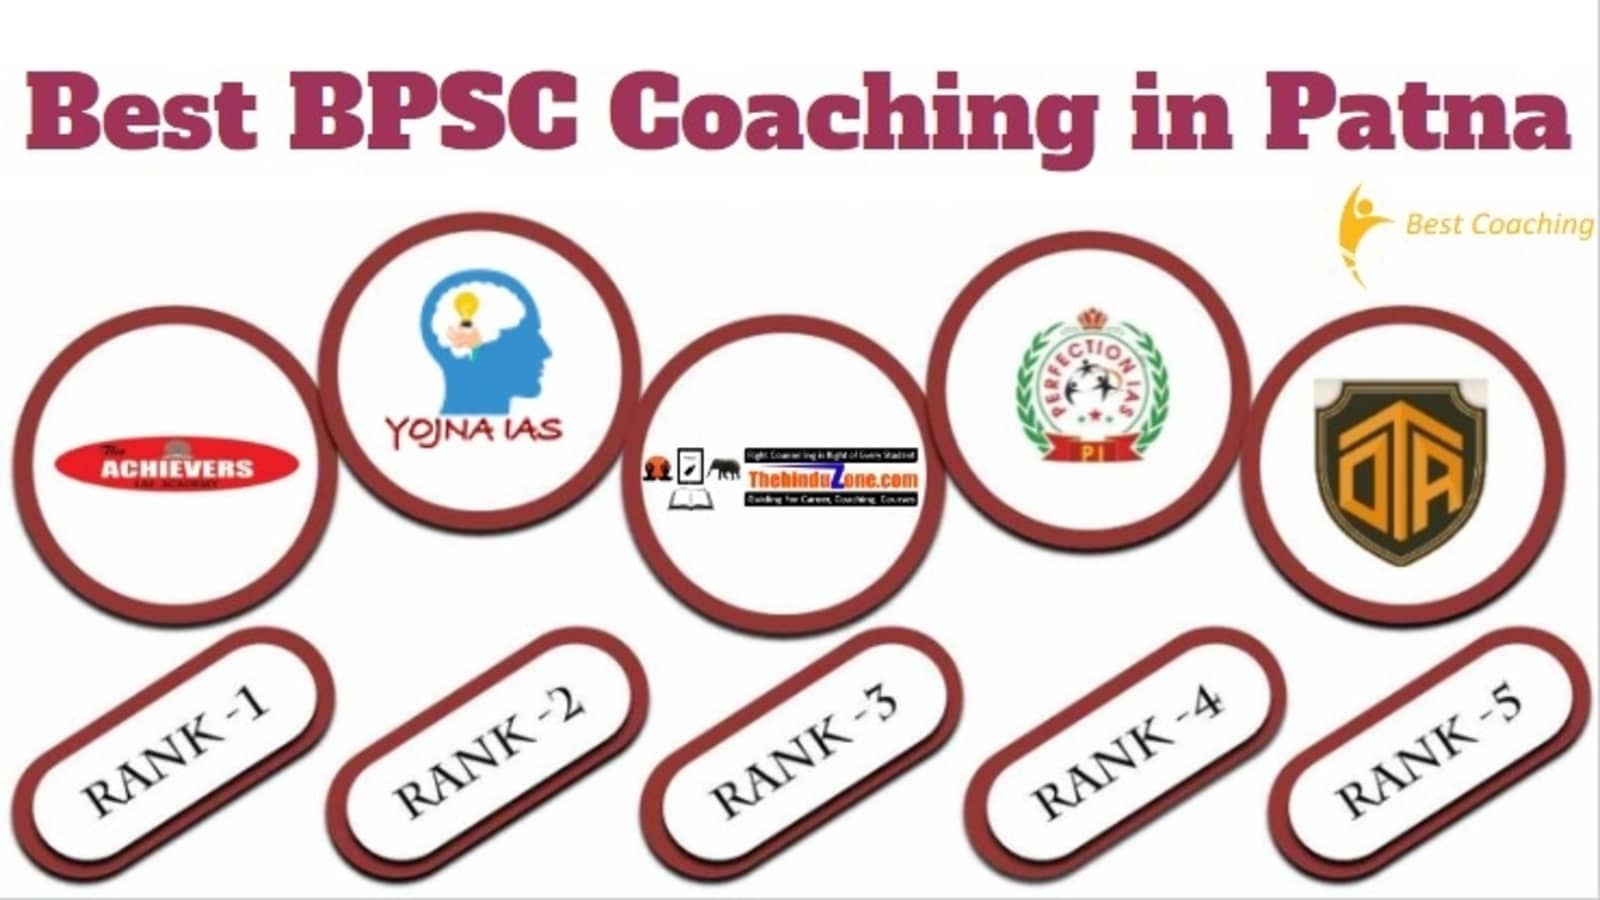 BPSC Coaching in Patna